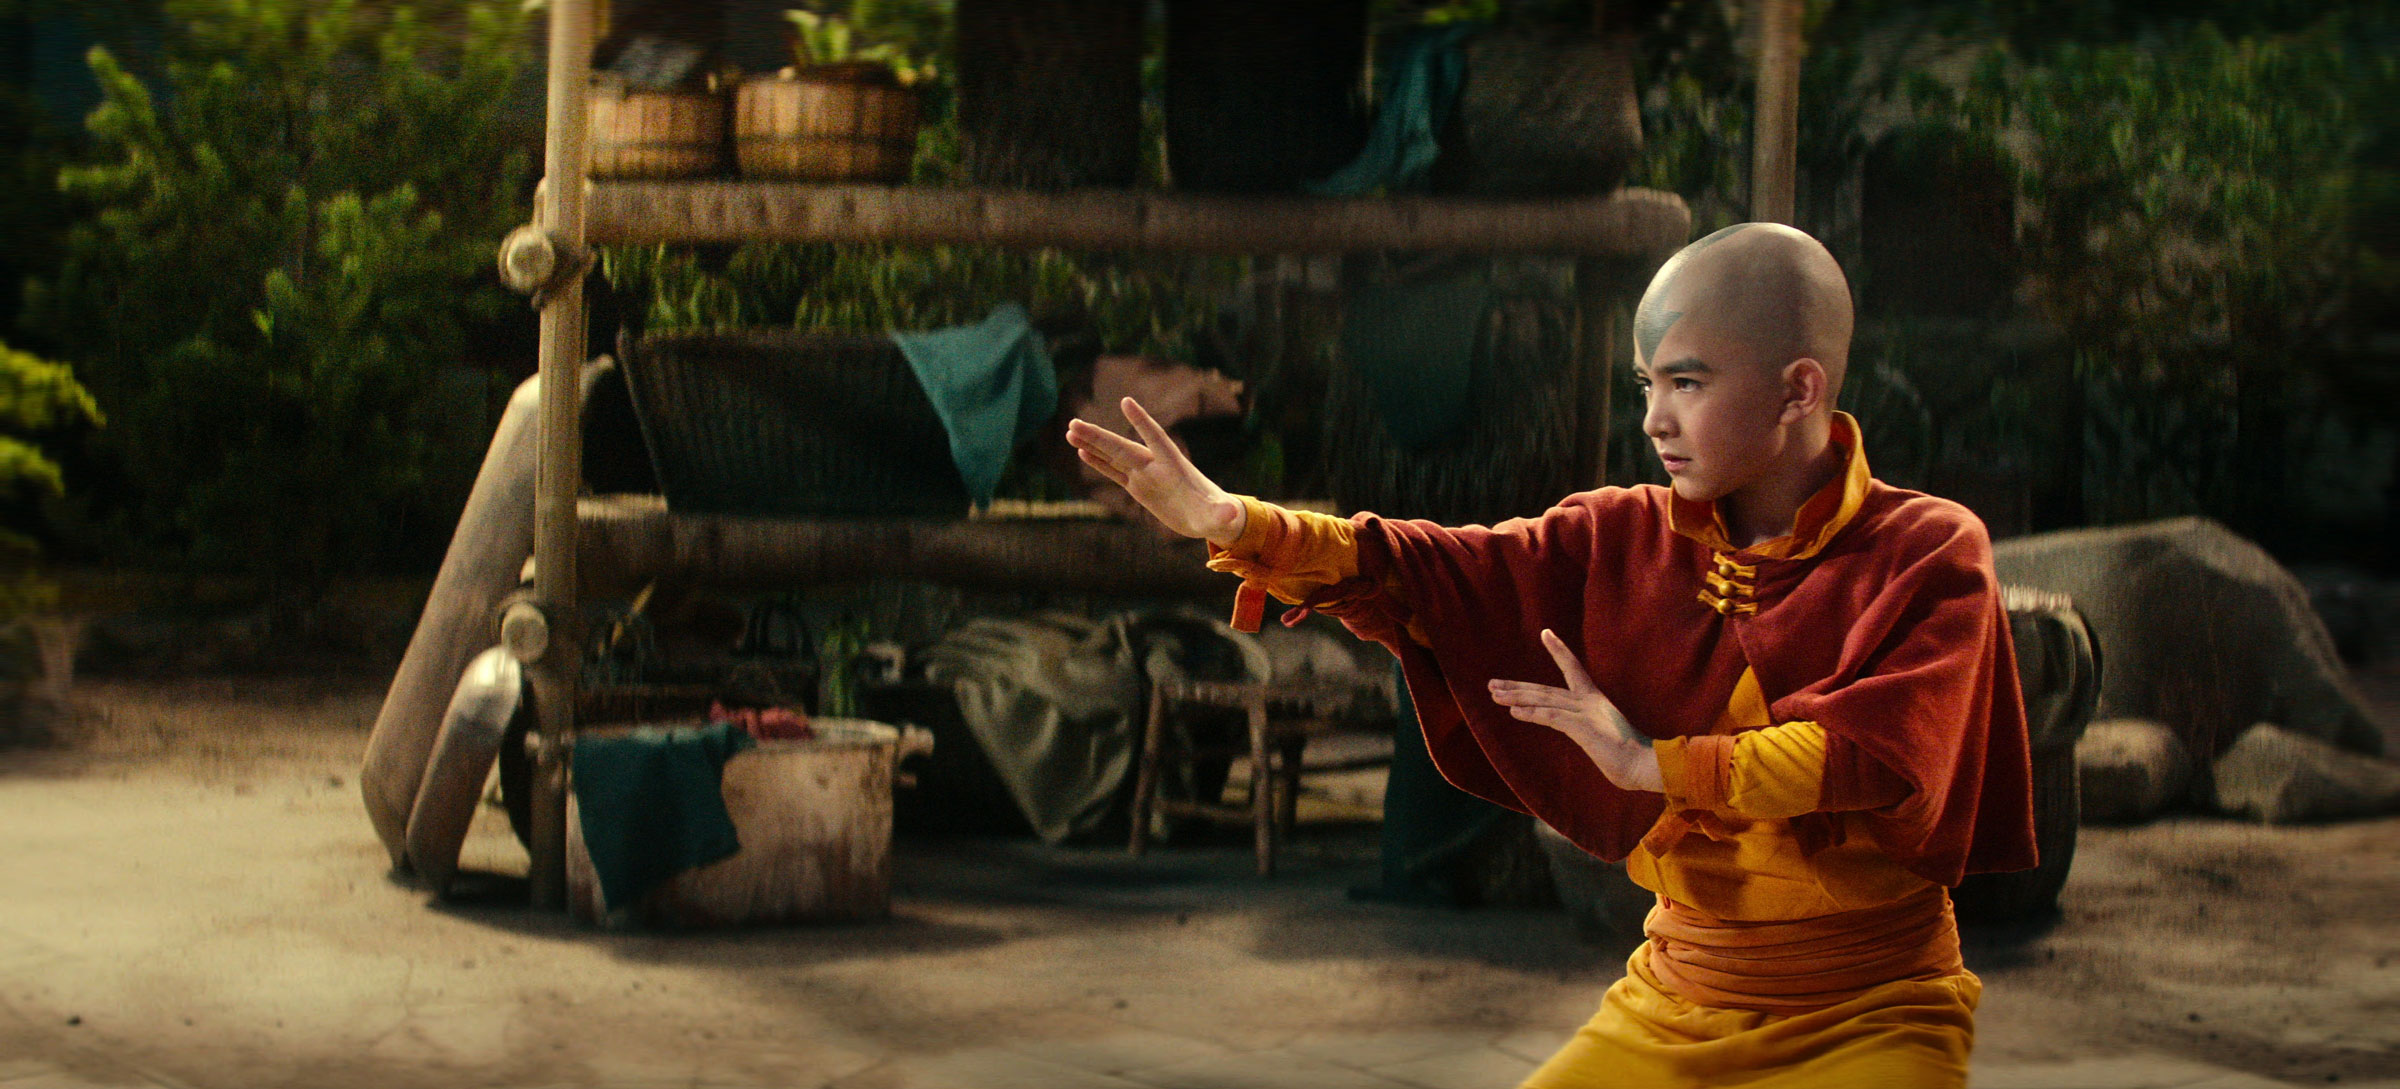 Gordon Cormier as Aang in season 1 of Avatar: The Last Airbender.